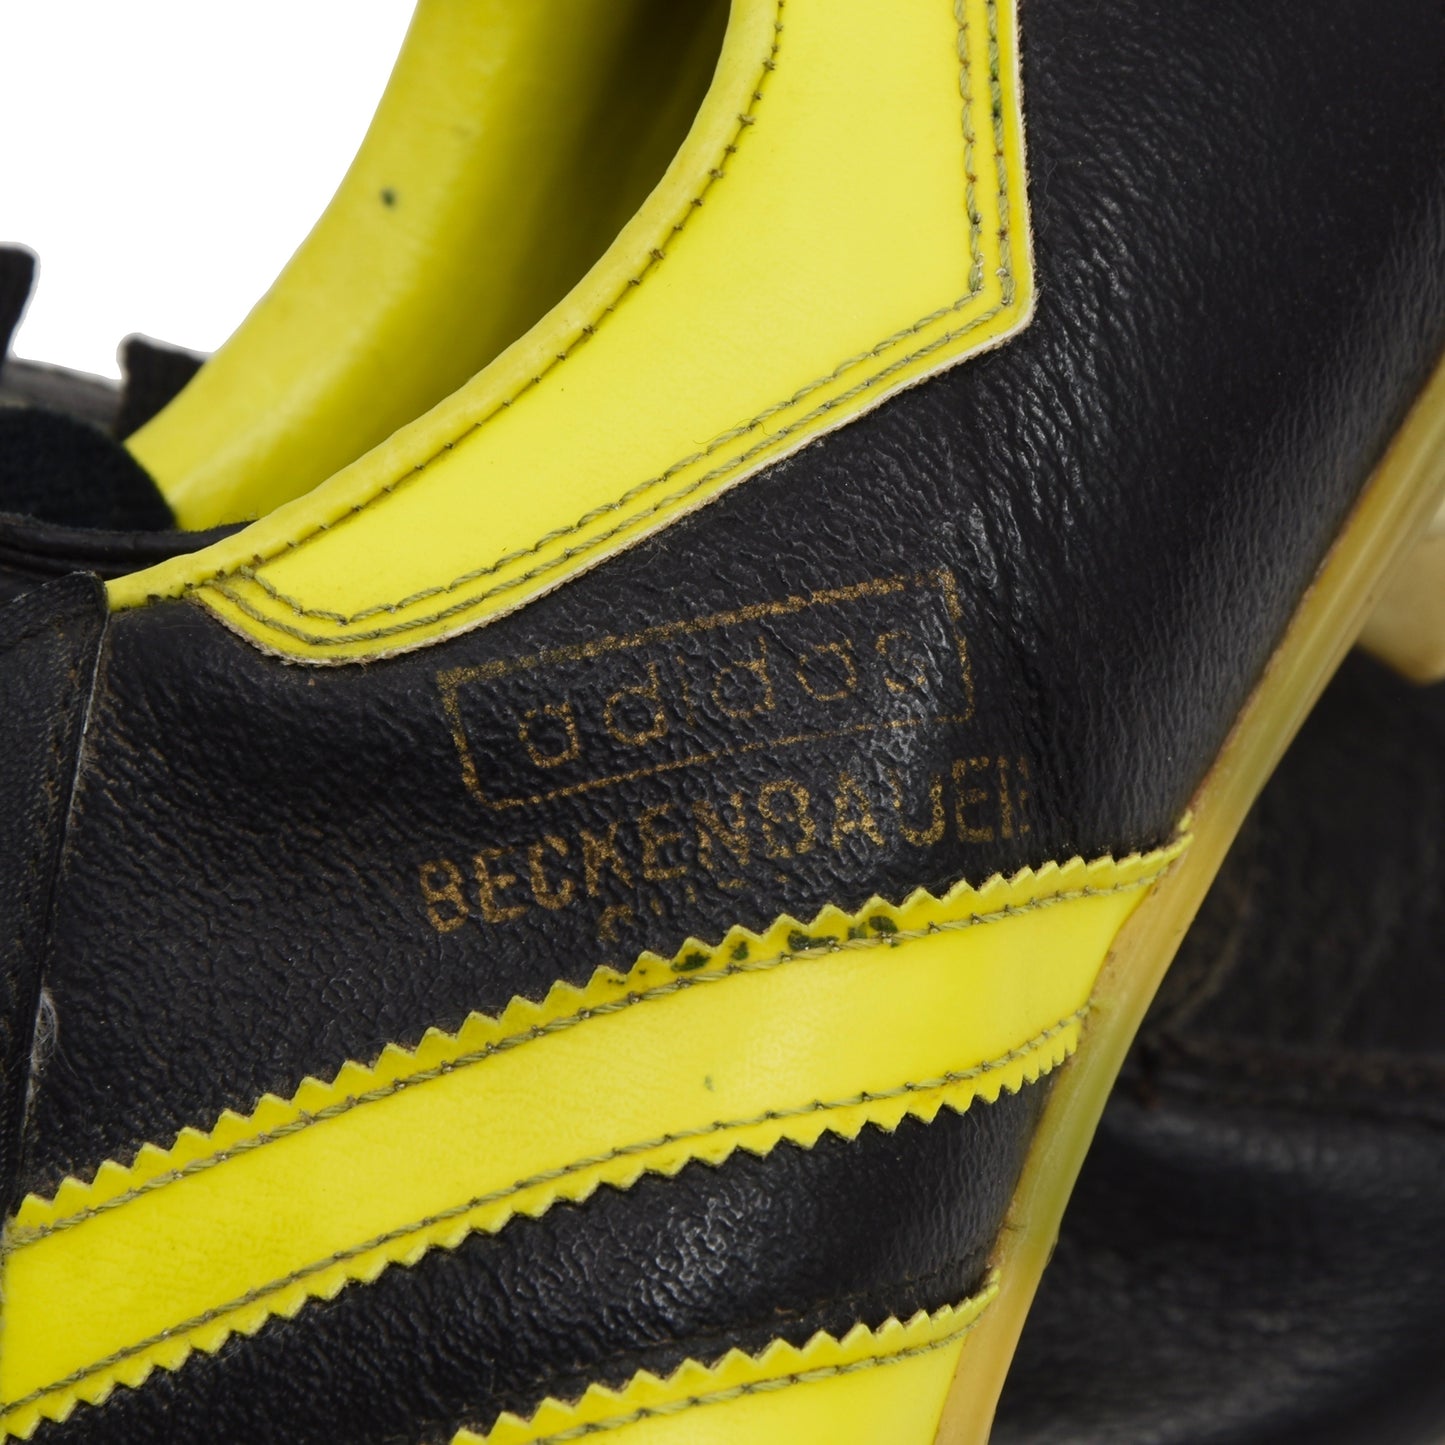 Vintage Adidas Beckenbauer Super Fußballschuhe hergestellt in Österreich Größe 8 - schwarz/neongelb